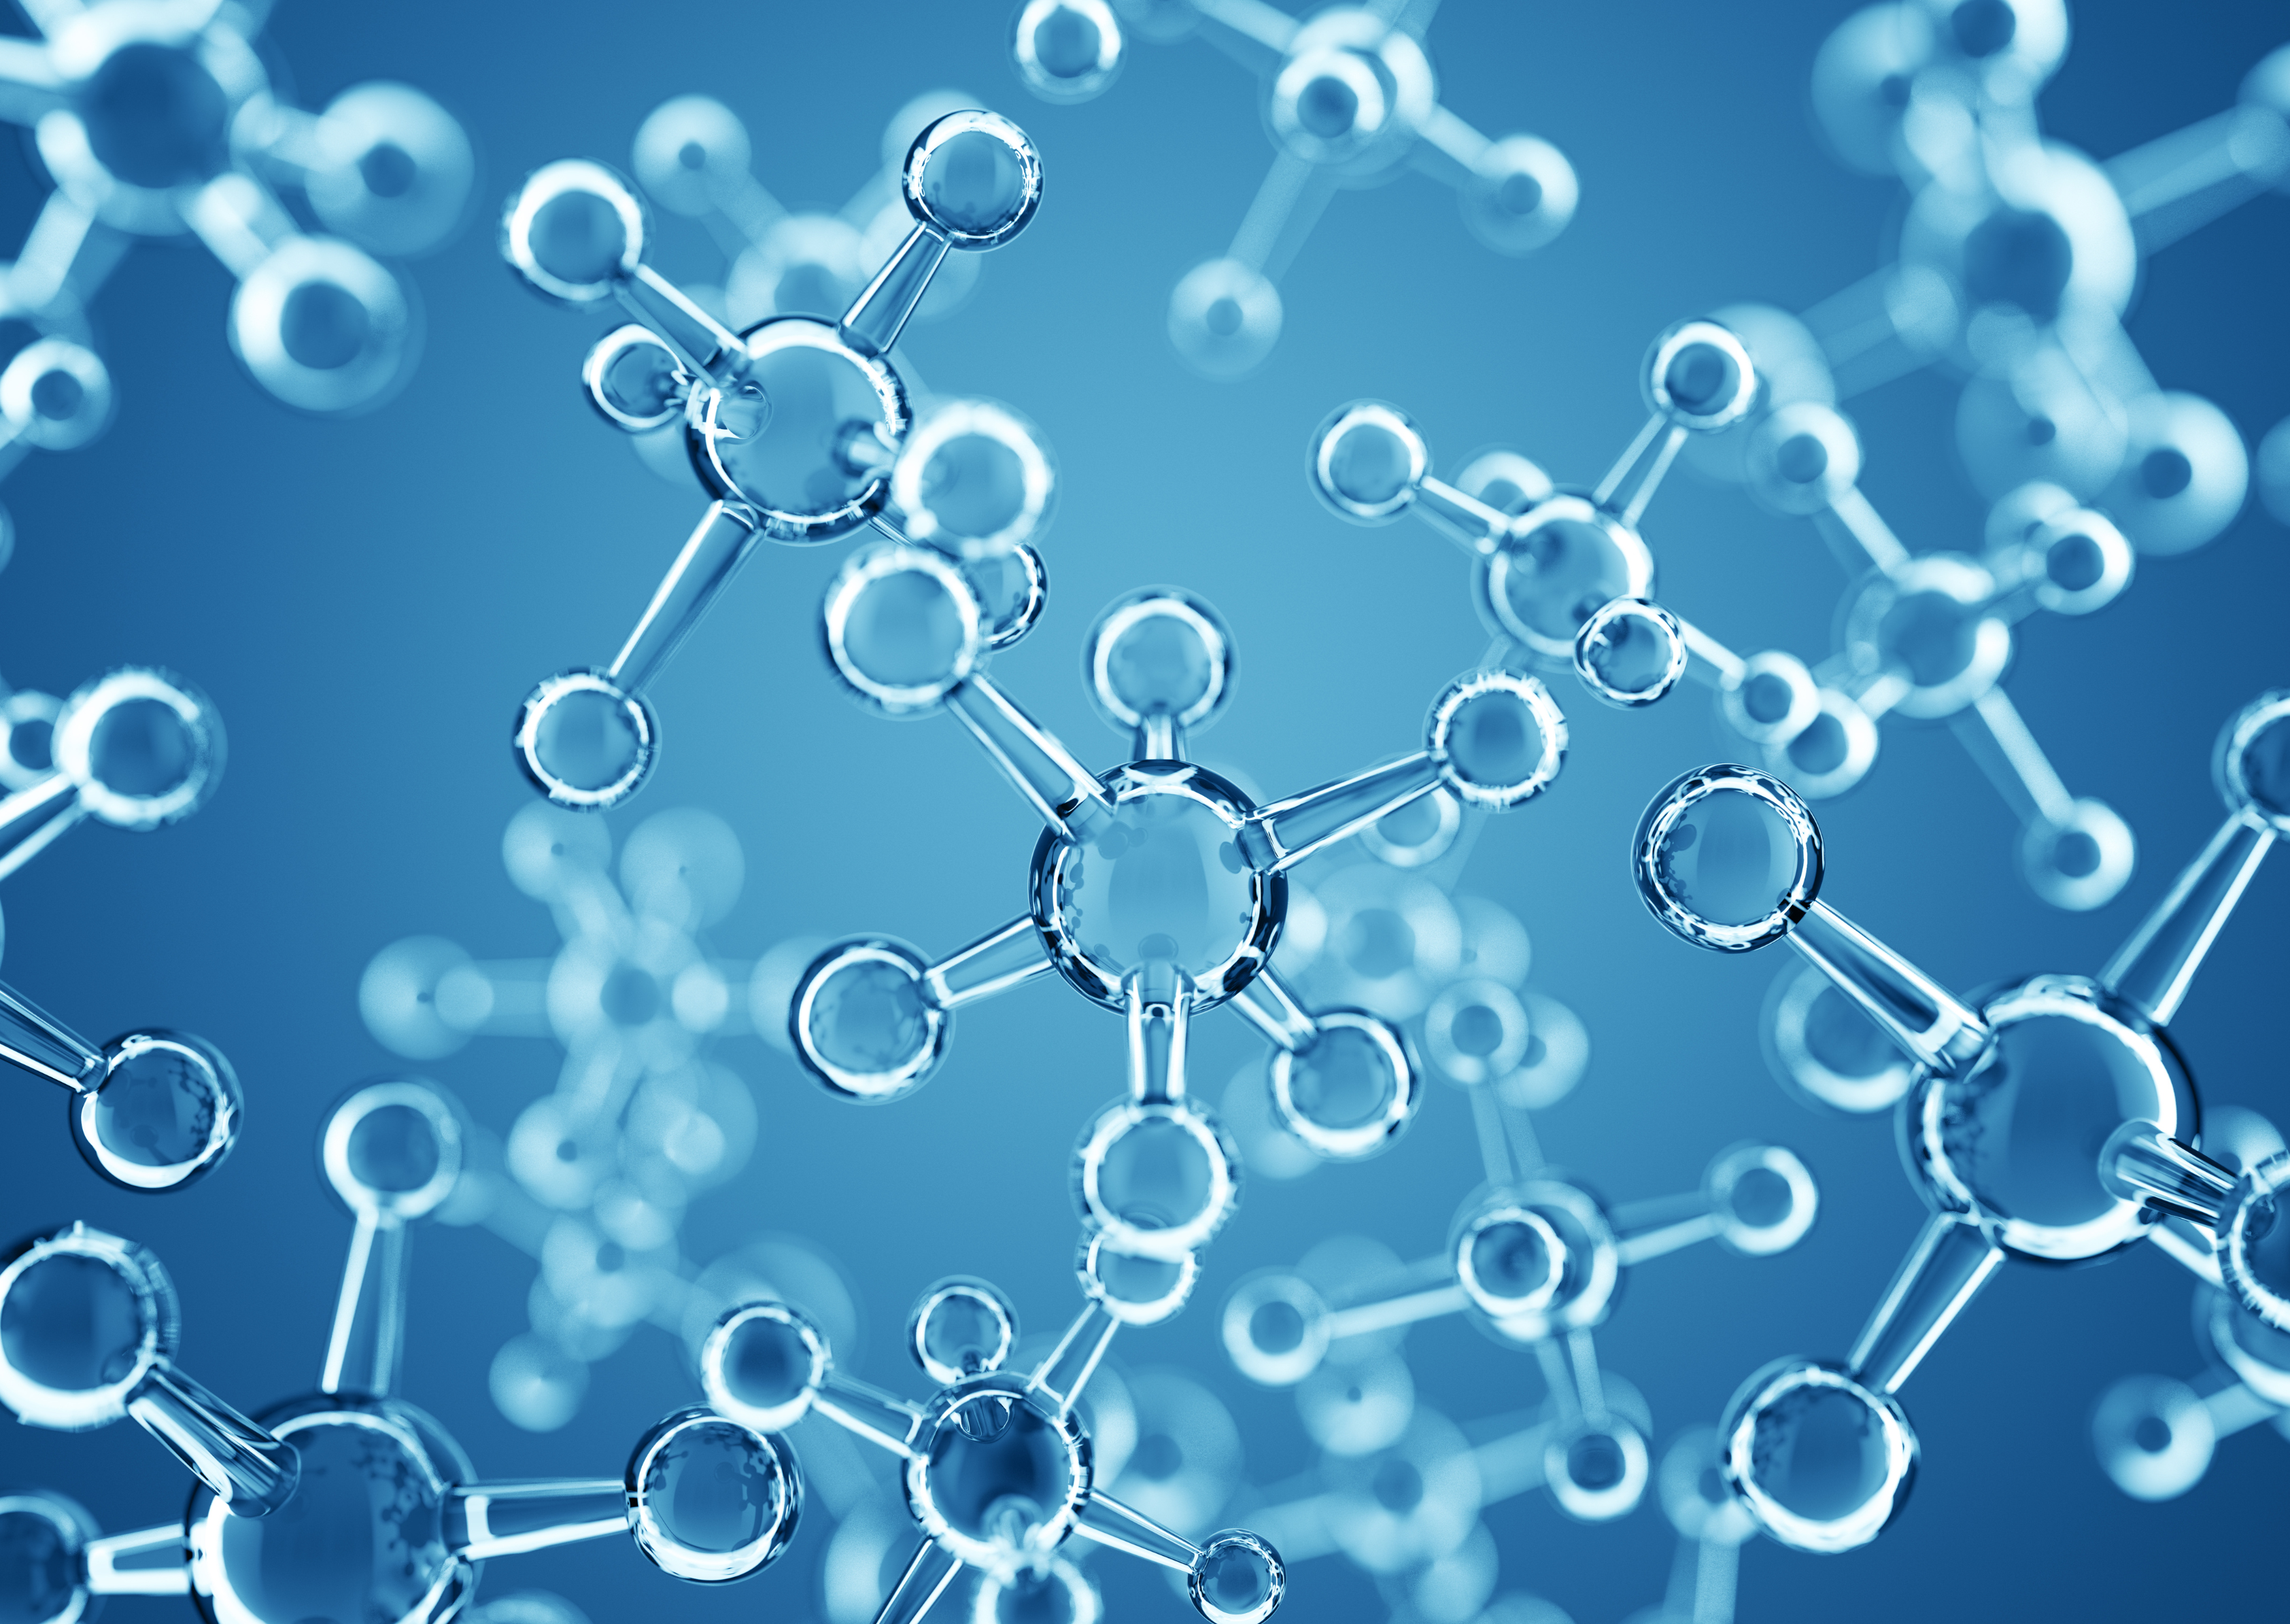 Vue microscopique de molécules transparentes sur un fond bleu